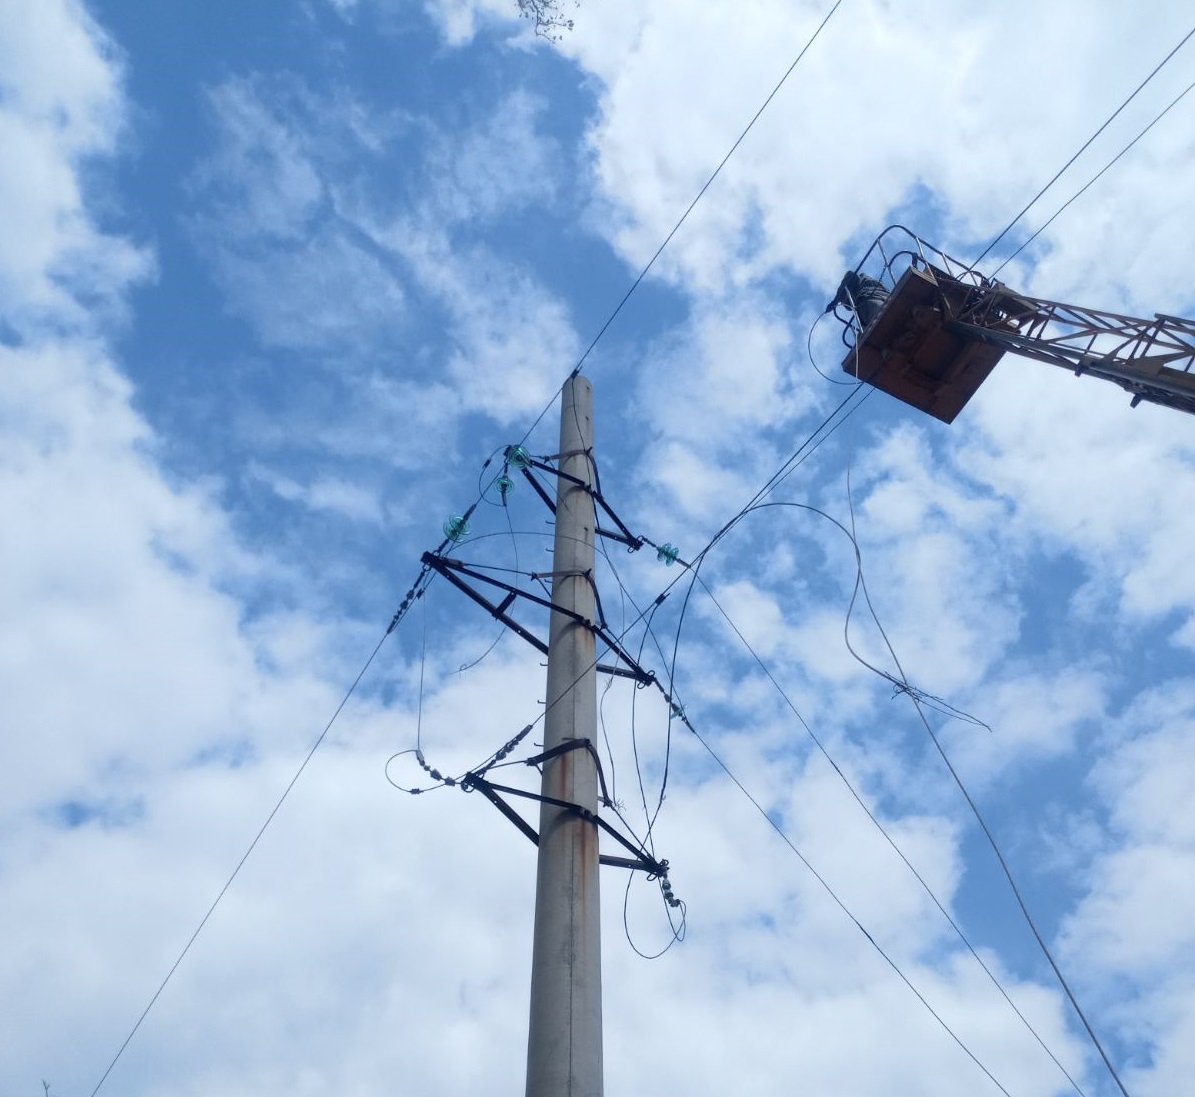 Ще 4,3 тисячі родин зі світлом на Донеччині: ДТЕК Донецькі електромережі продовжує ремонти мереж після обстрілів